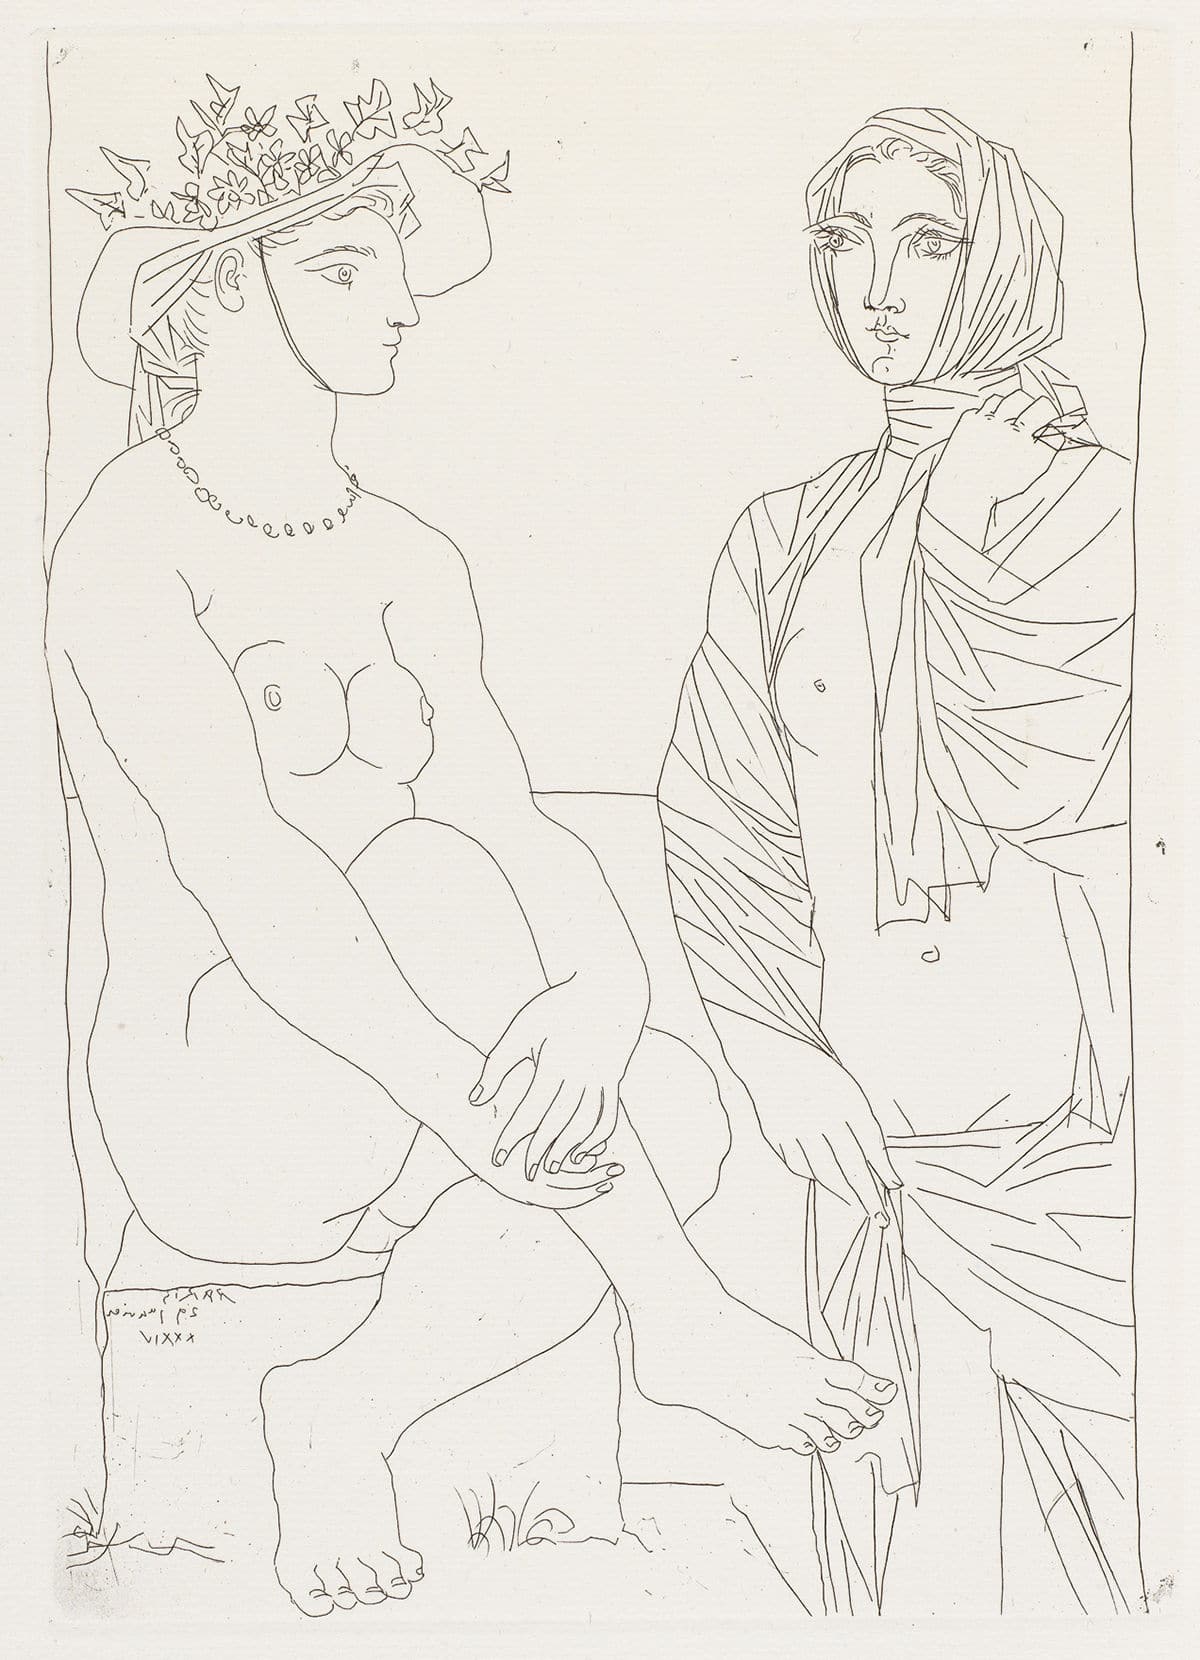 Mujer sentada con sombrero y mujer de pie cubierta © Pablo Picasso: Sucesión Pablo Picasso / VEGAP, Madrid © COLECCIONES Fundación MAPFRE